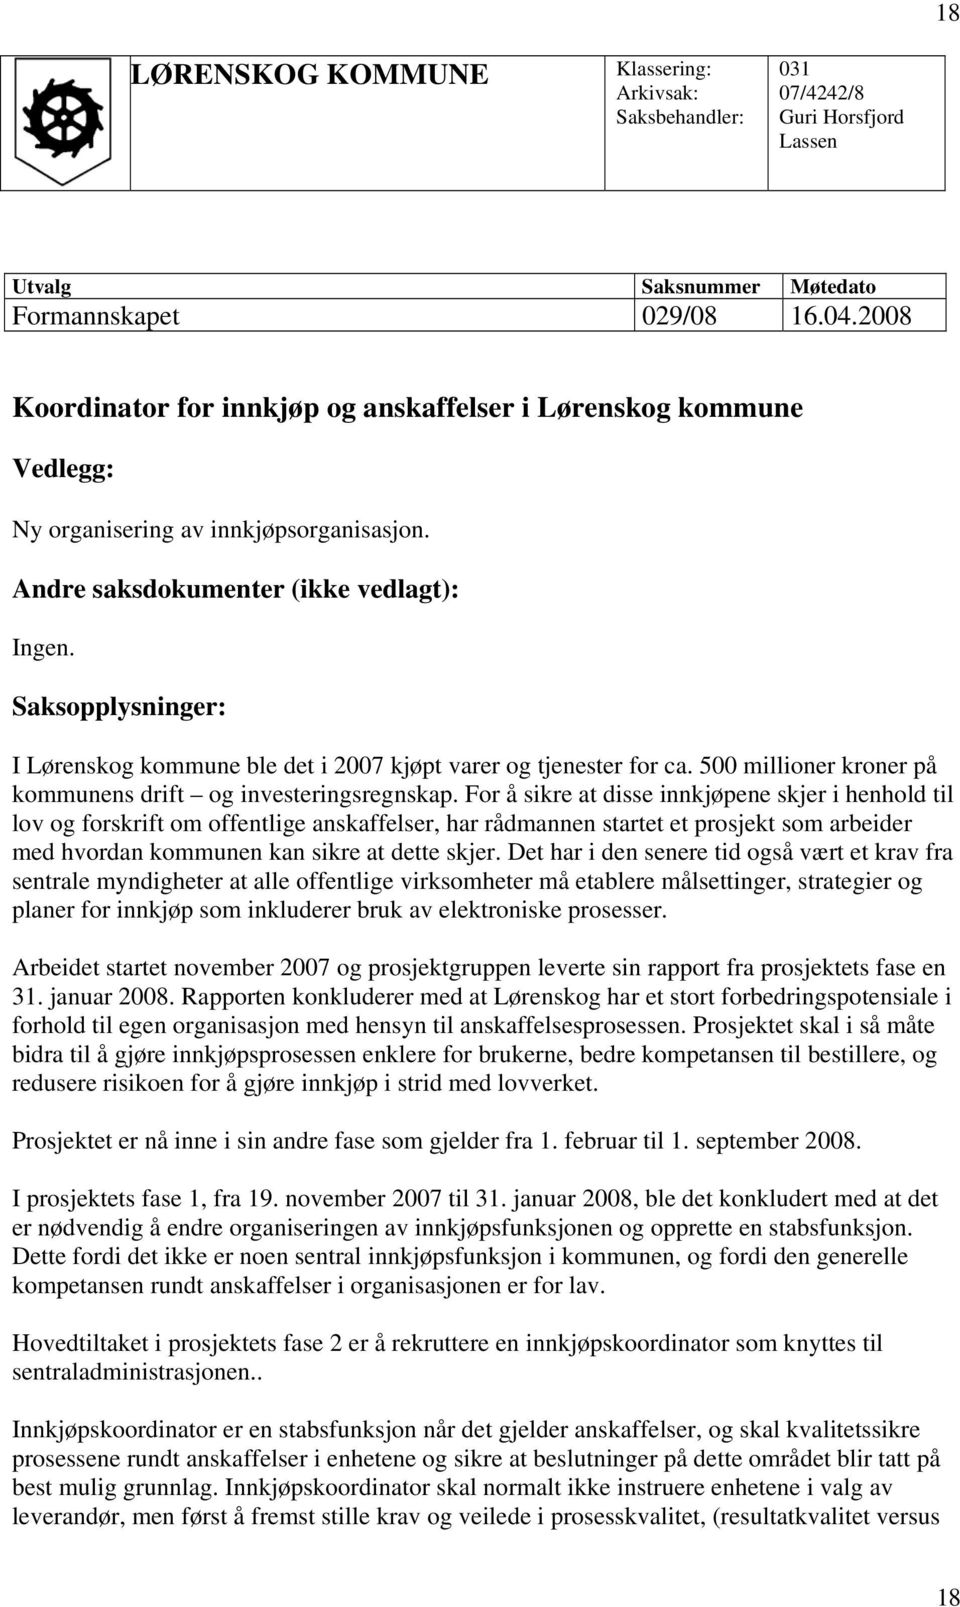 Saksopplysninger: I Lørenskog kommune ble det i 2007 kjøpt varer og tjenester for ca. 500 millioner kroner på kommunens drift og investeringsregnskap.